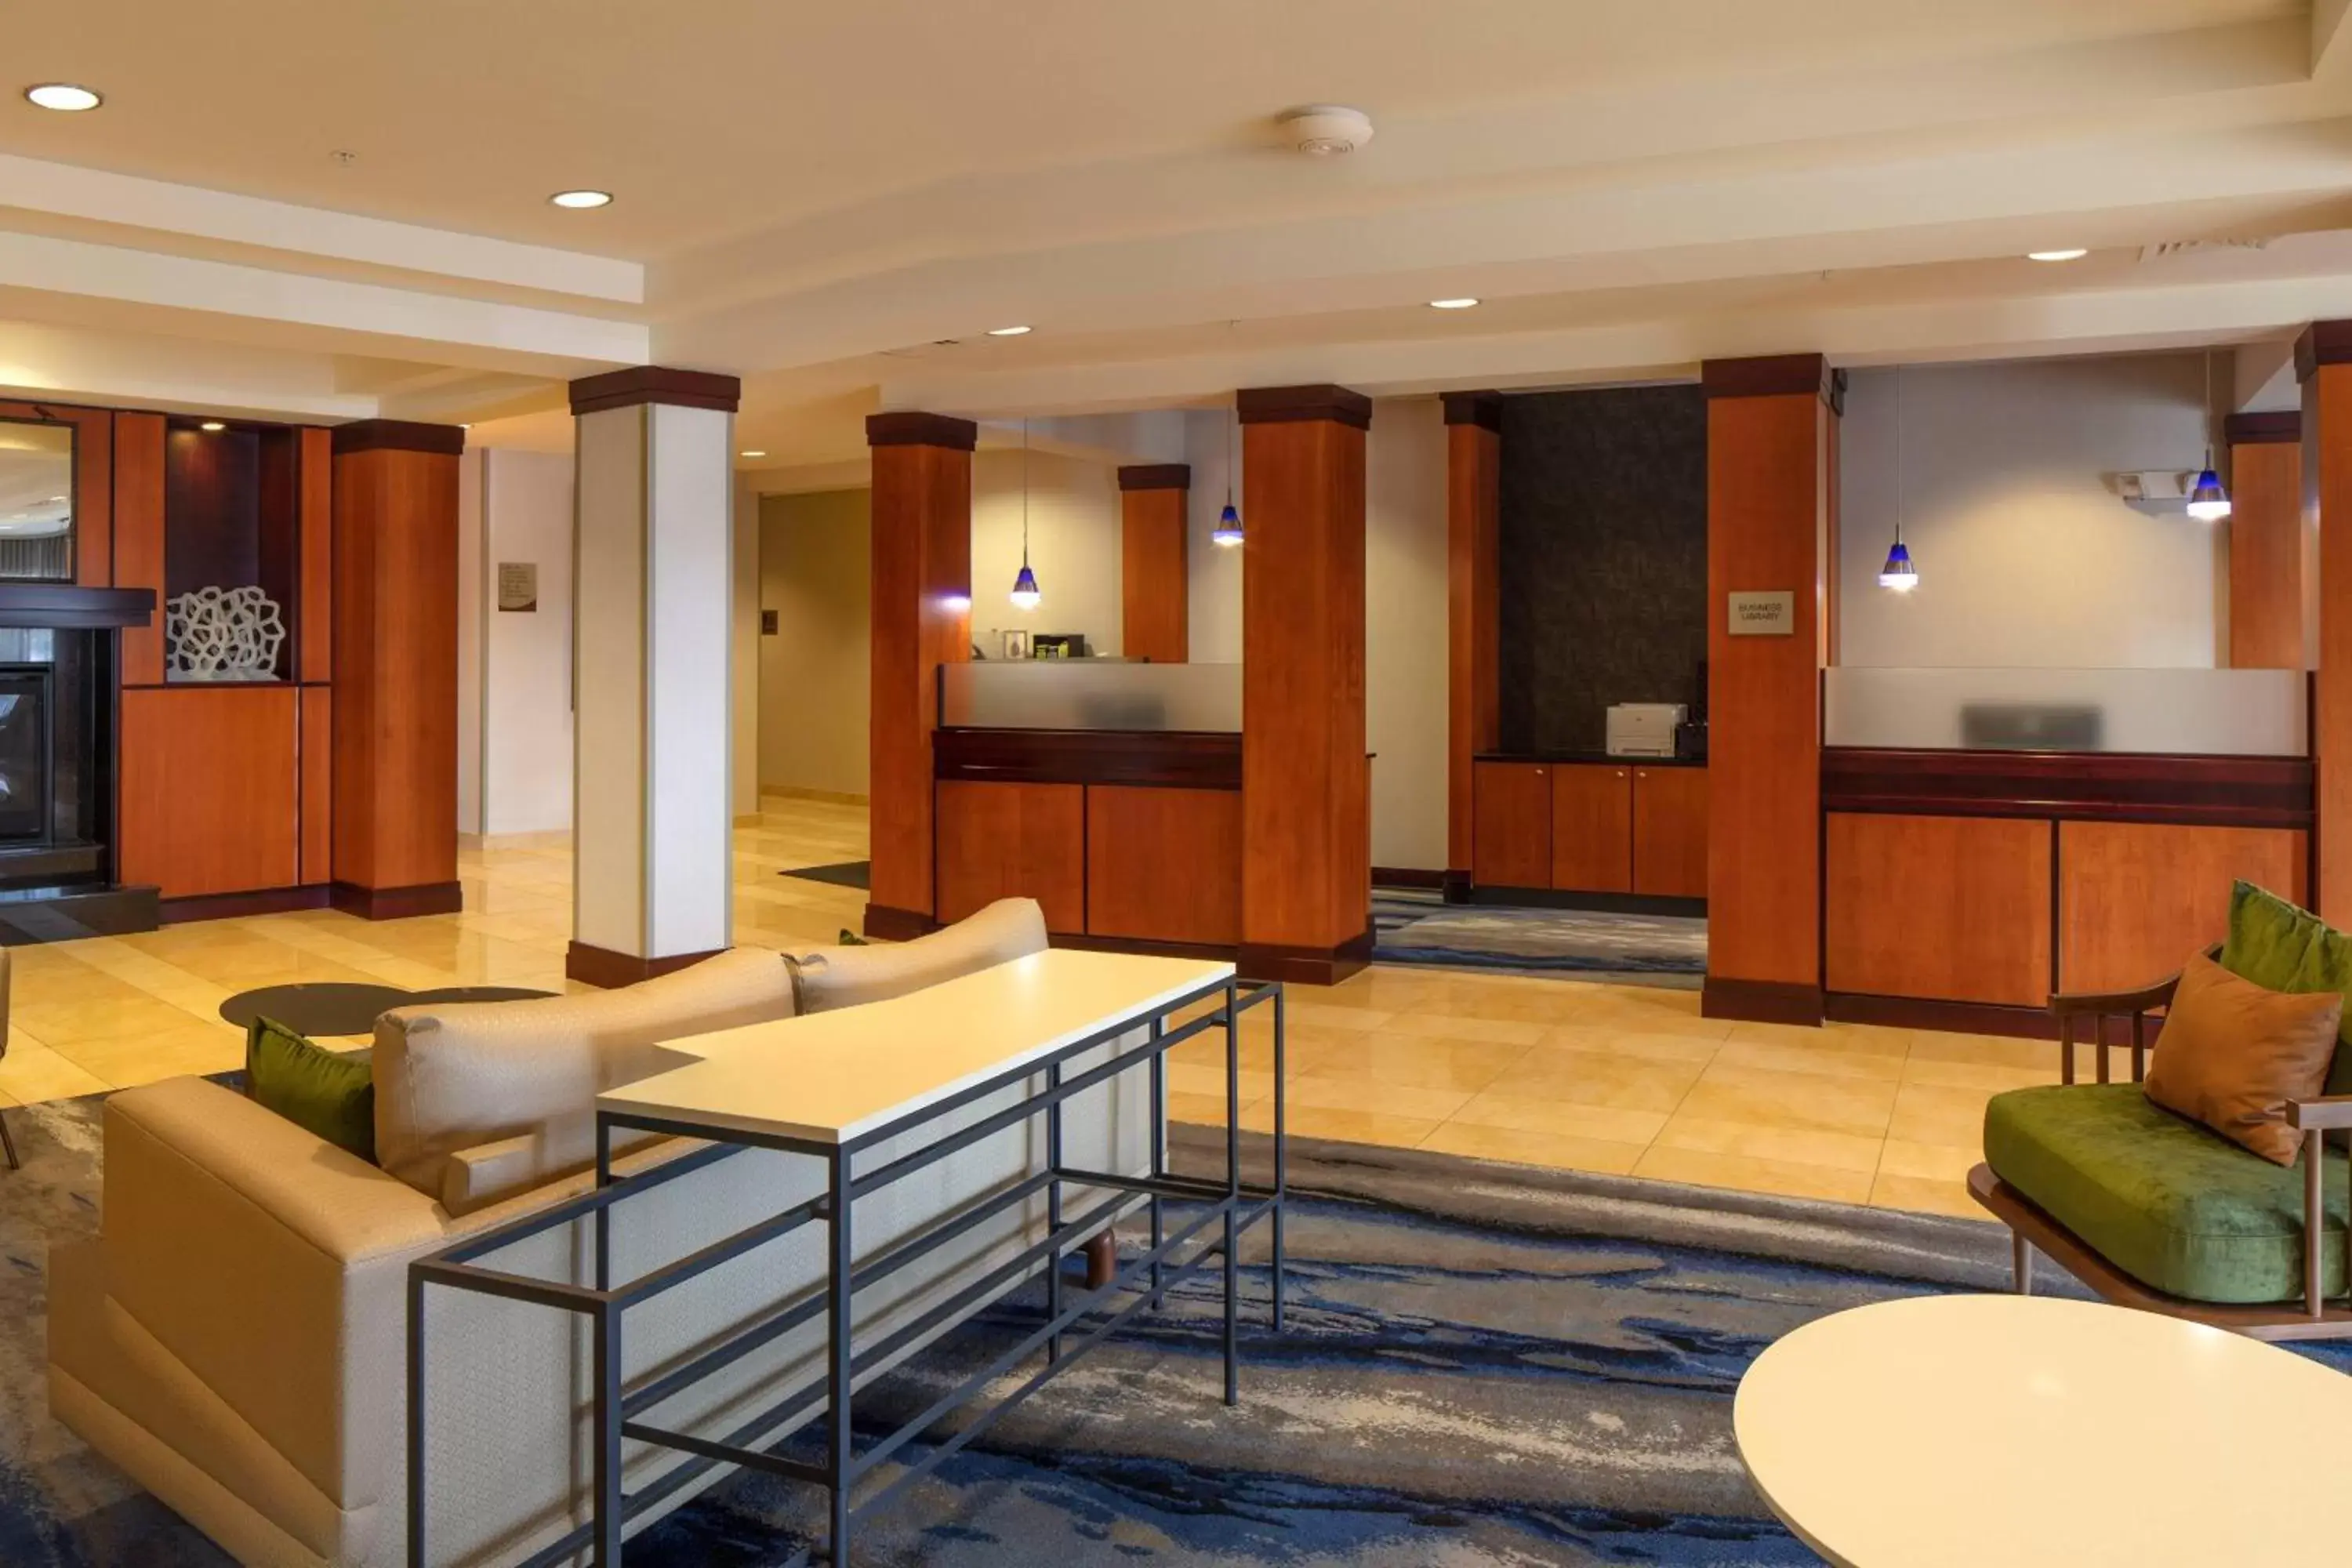 Lobby or reception in Fairfield Inn & Suites by Marriott Venice